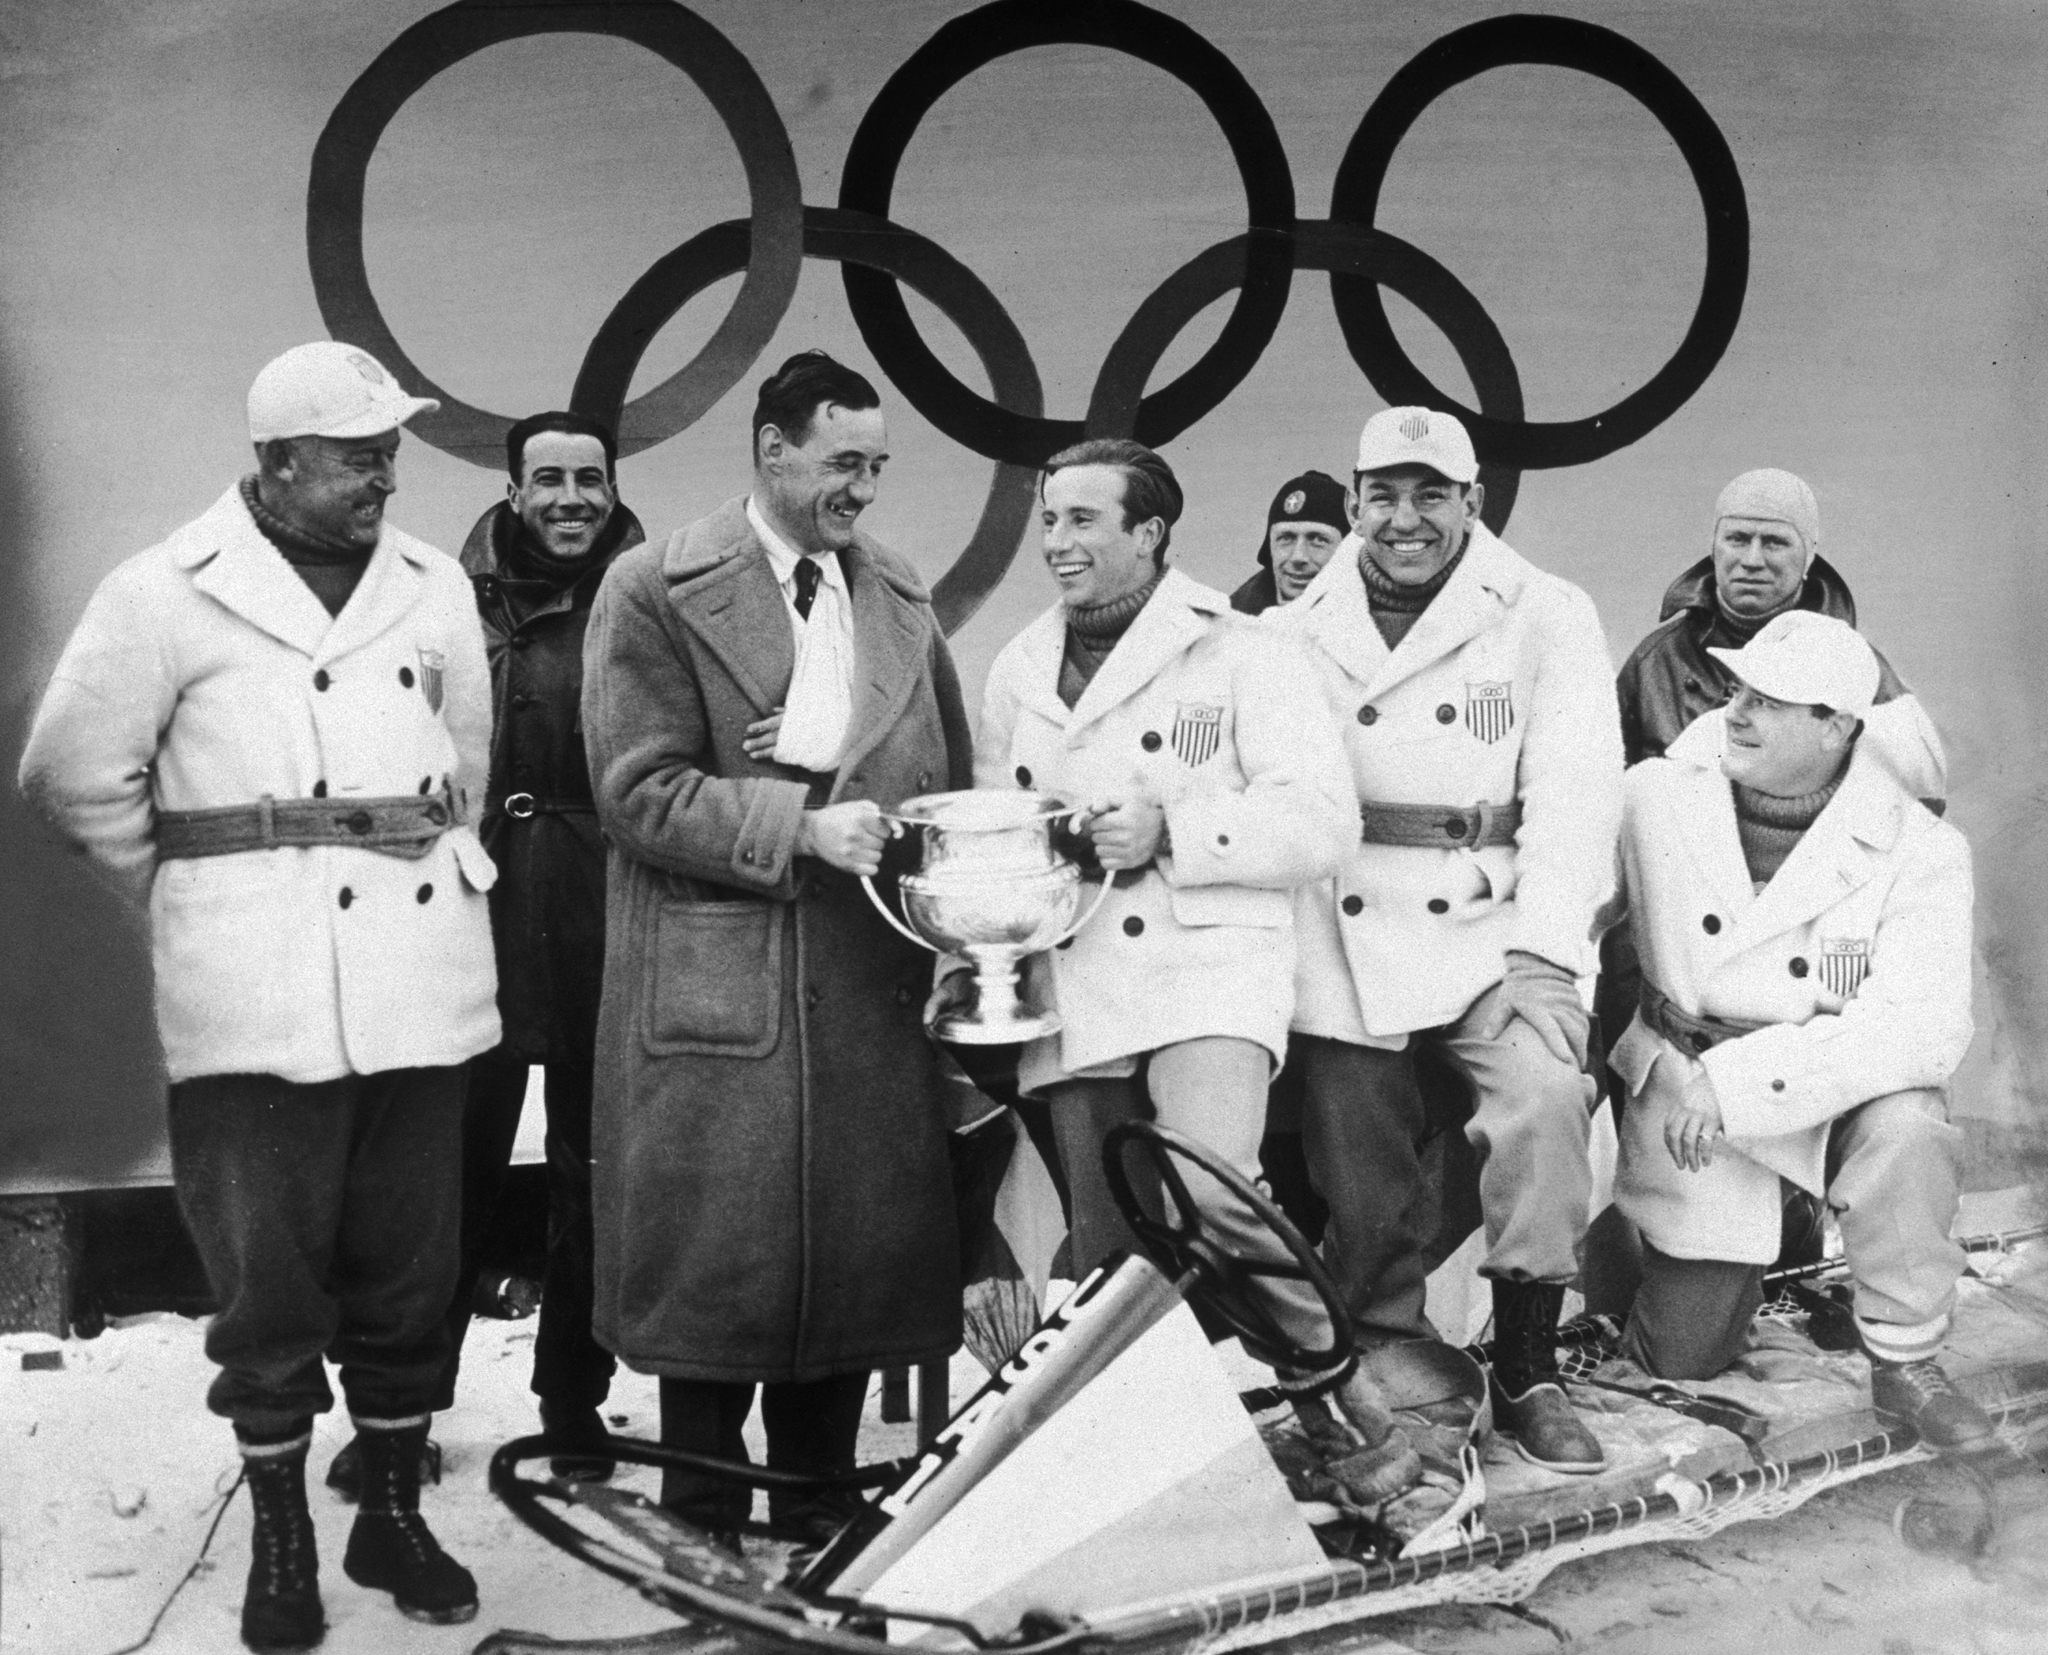 Eddie Eagan, tercero por la derecha, sonríe, mientras su compañero William L Fiske recibe el trofeo como ganador del oro olímpico de bobsleigh en Lake Placid 1932.